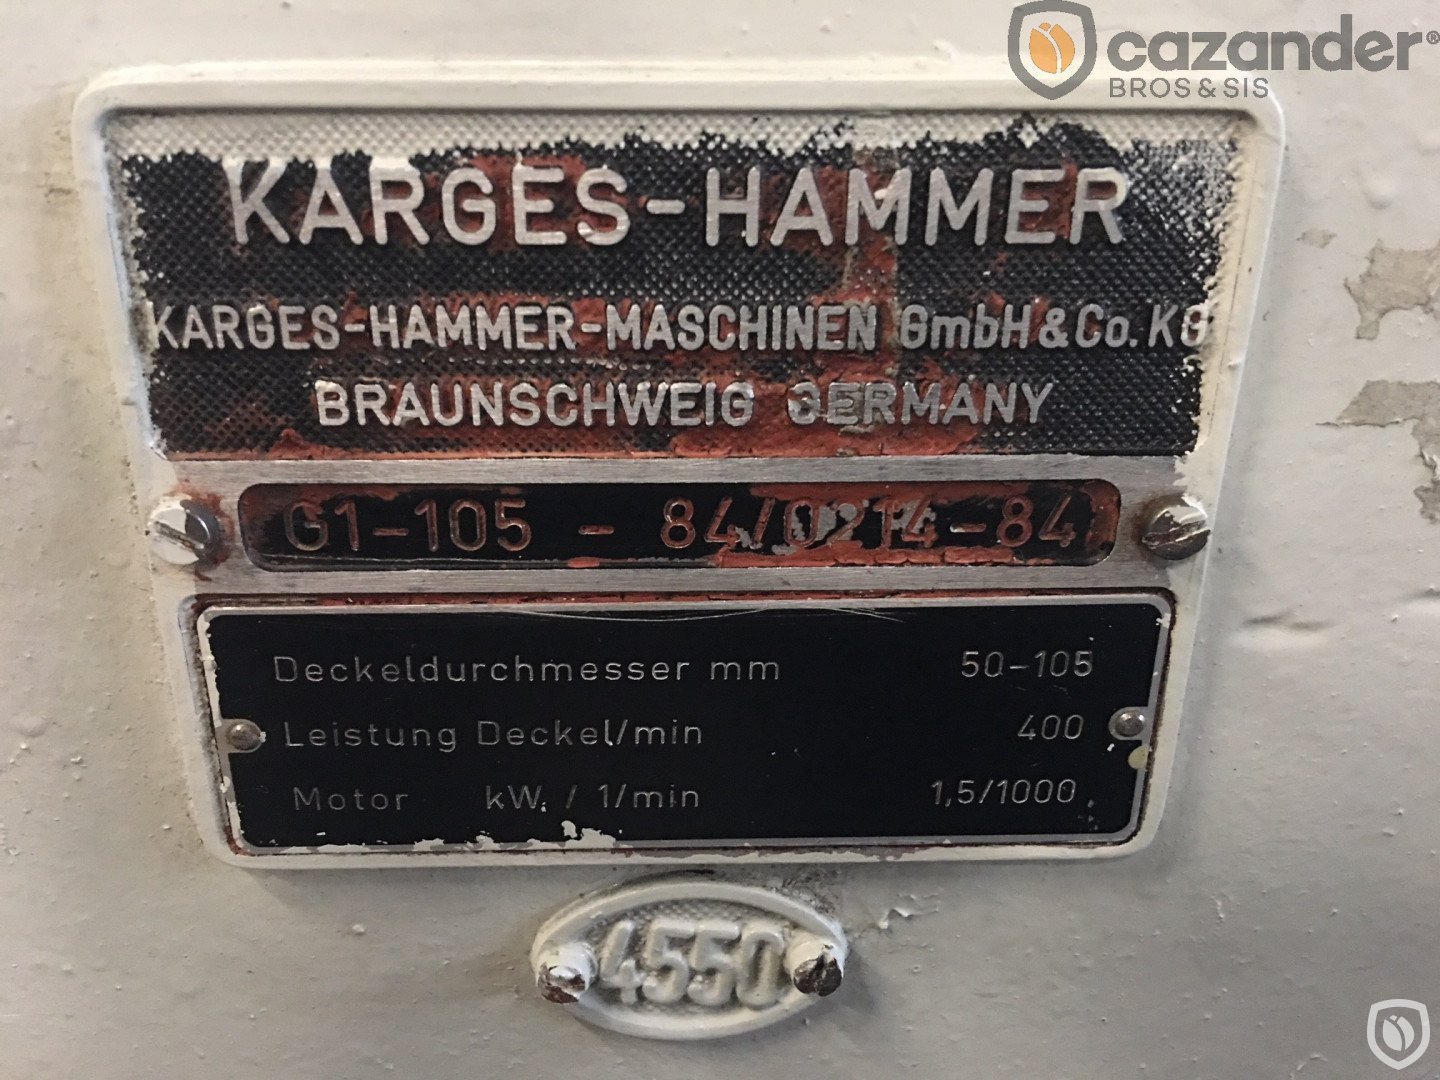 Karges Hammer G1-105